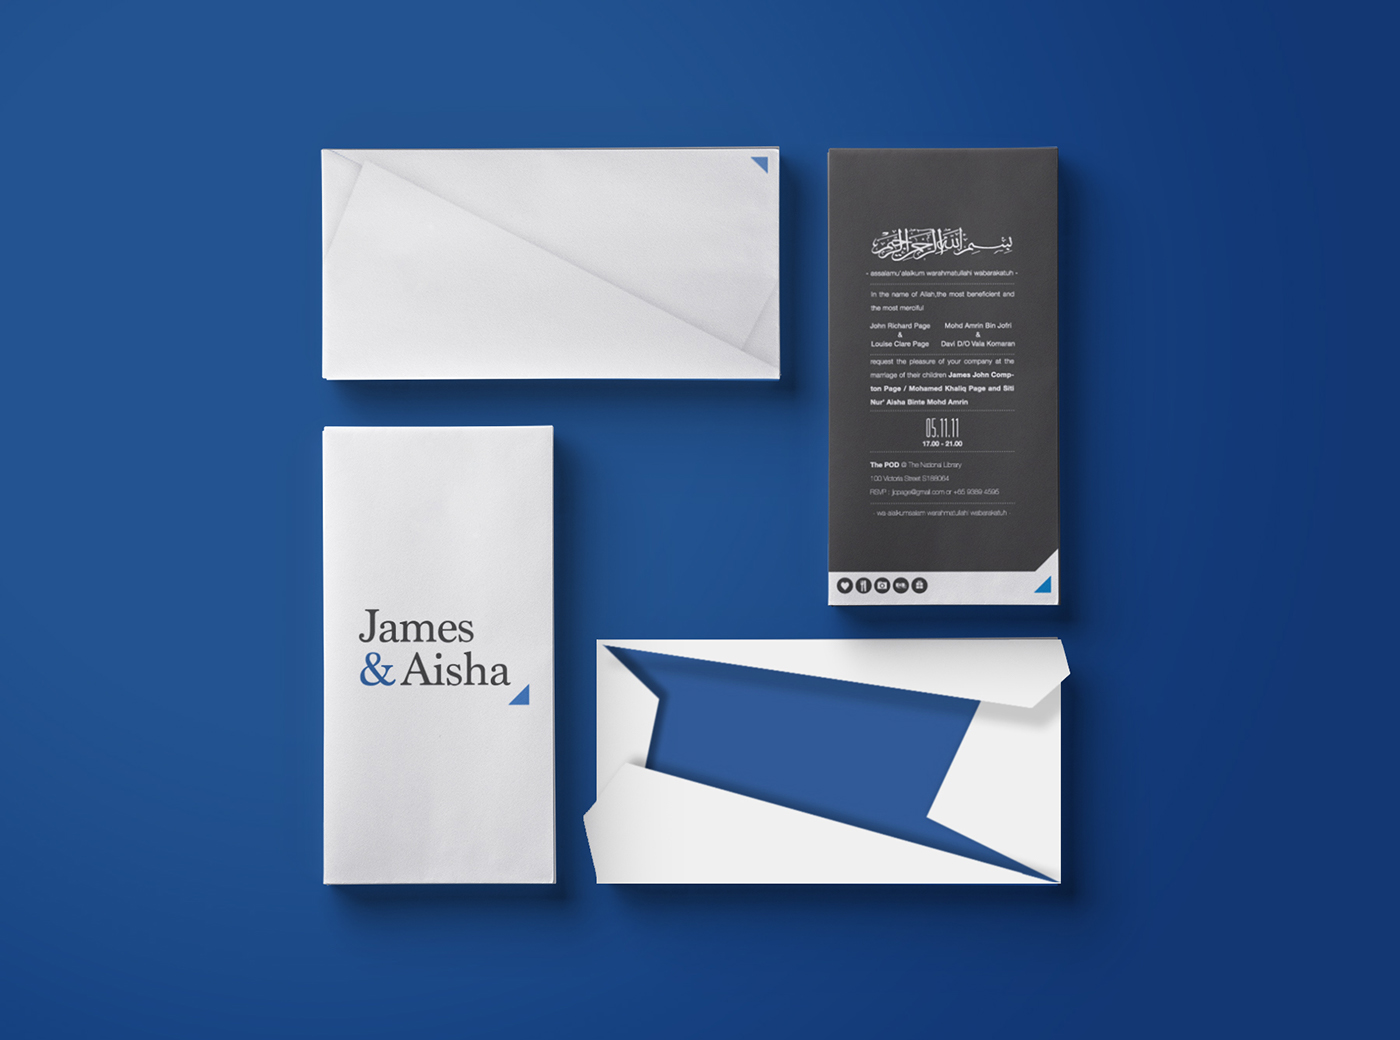 Aisha james wedding Invitation card singapore graphic design contemporary electric blue